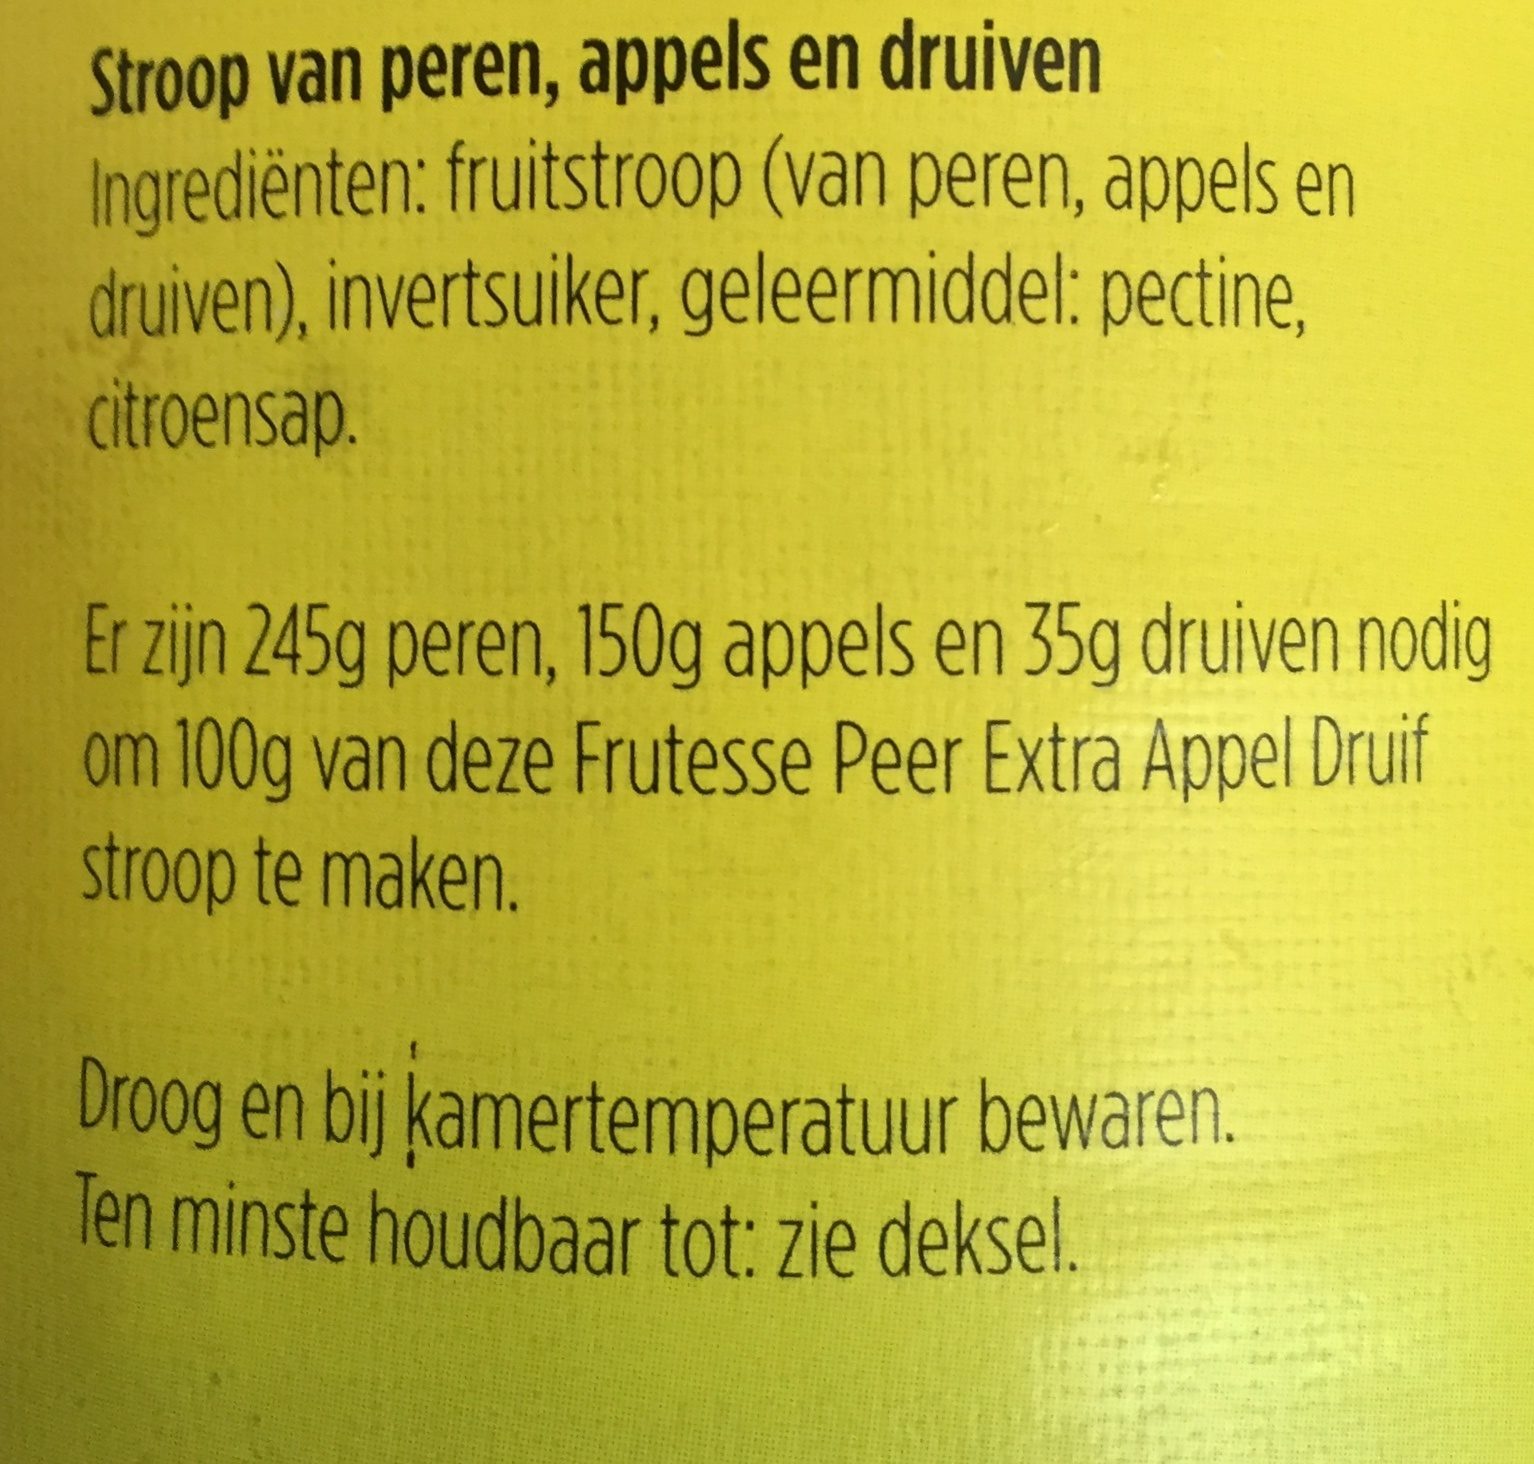 frutesse stroop (Peer Appel Druif) - Ingrediënten